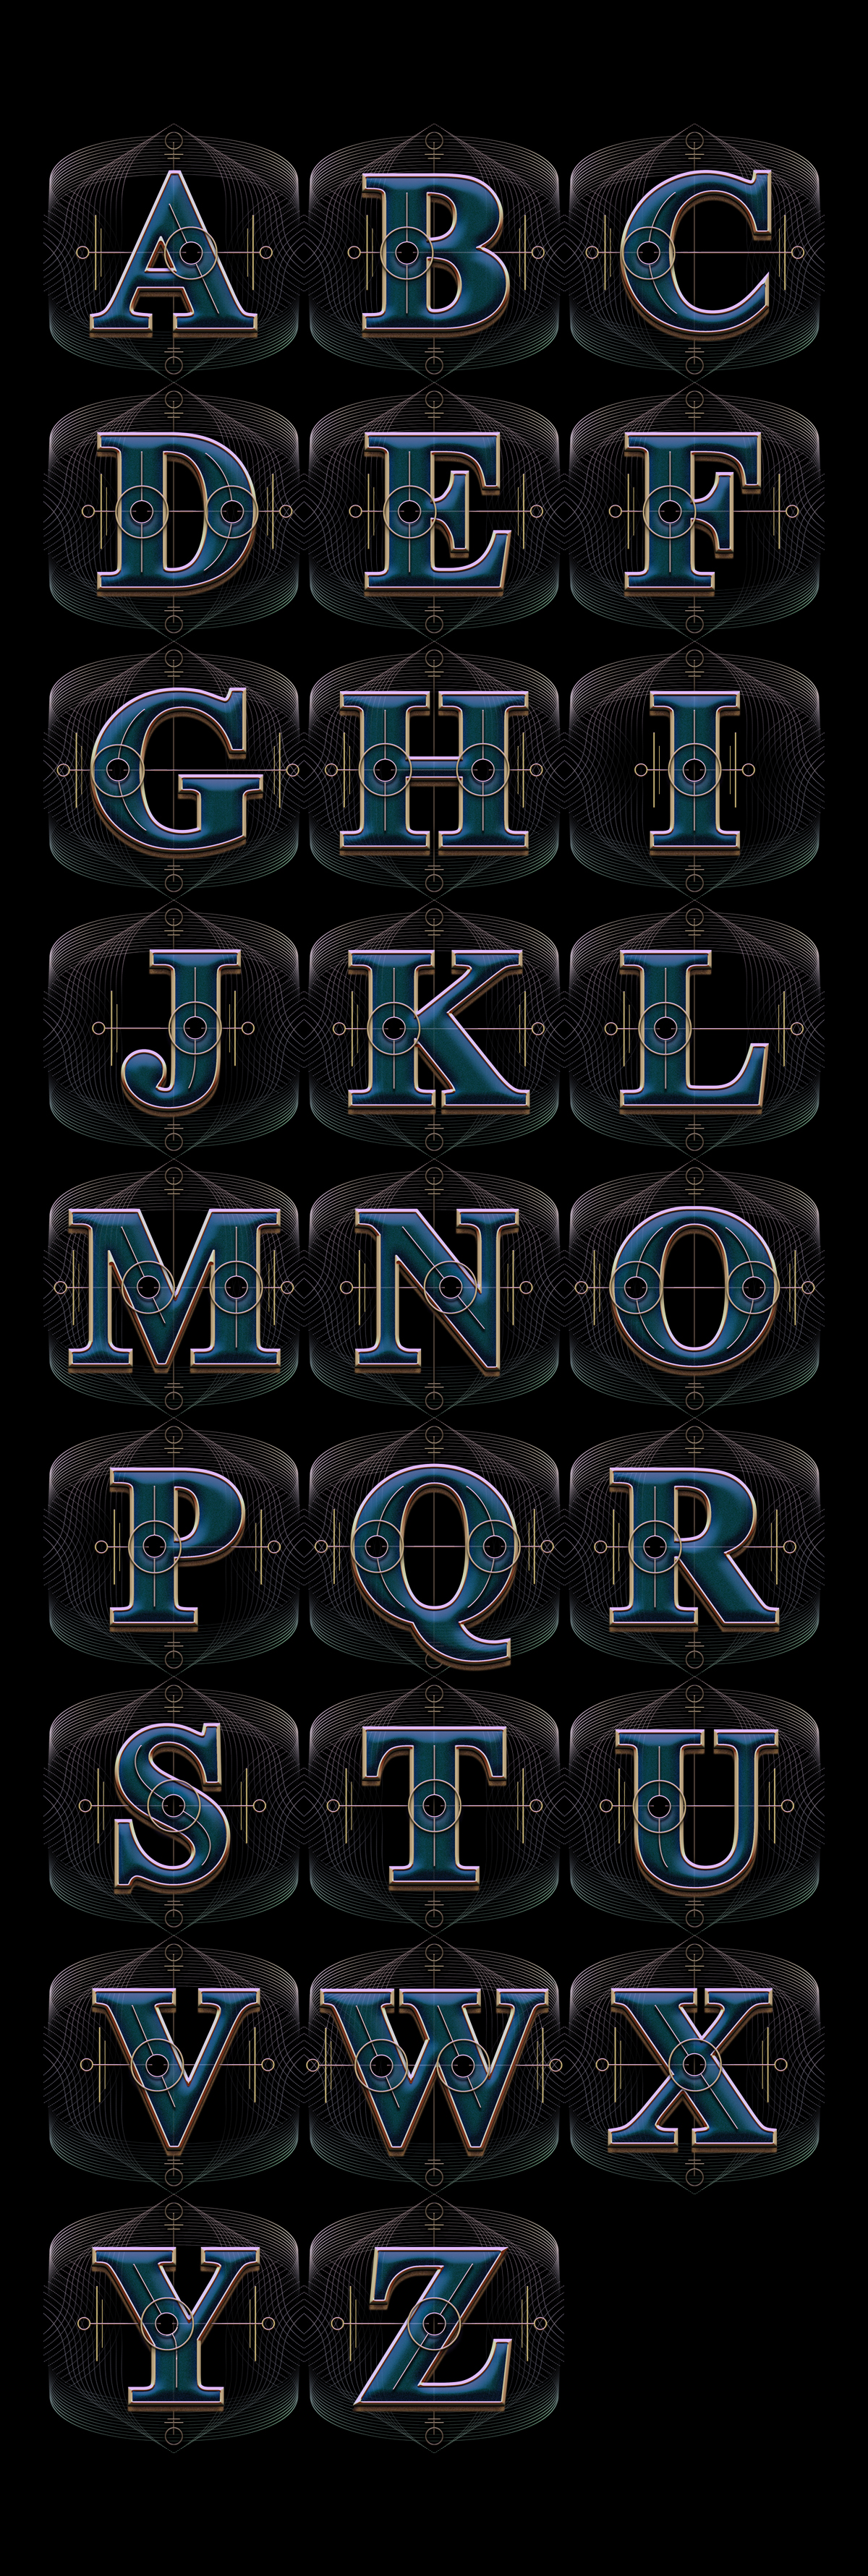 type markie_darkie Decorative typeface font